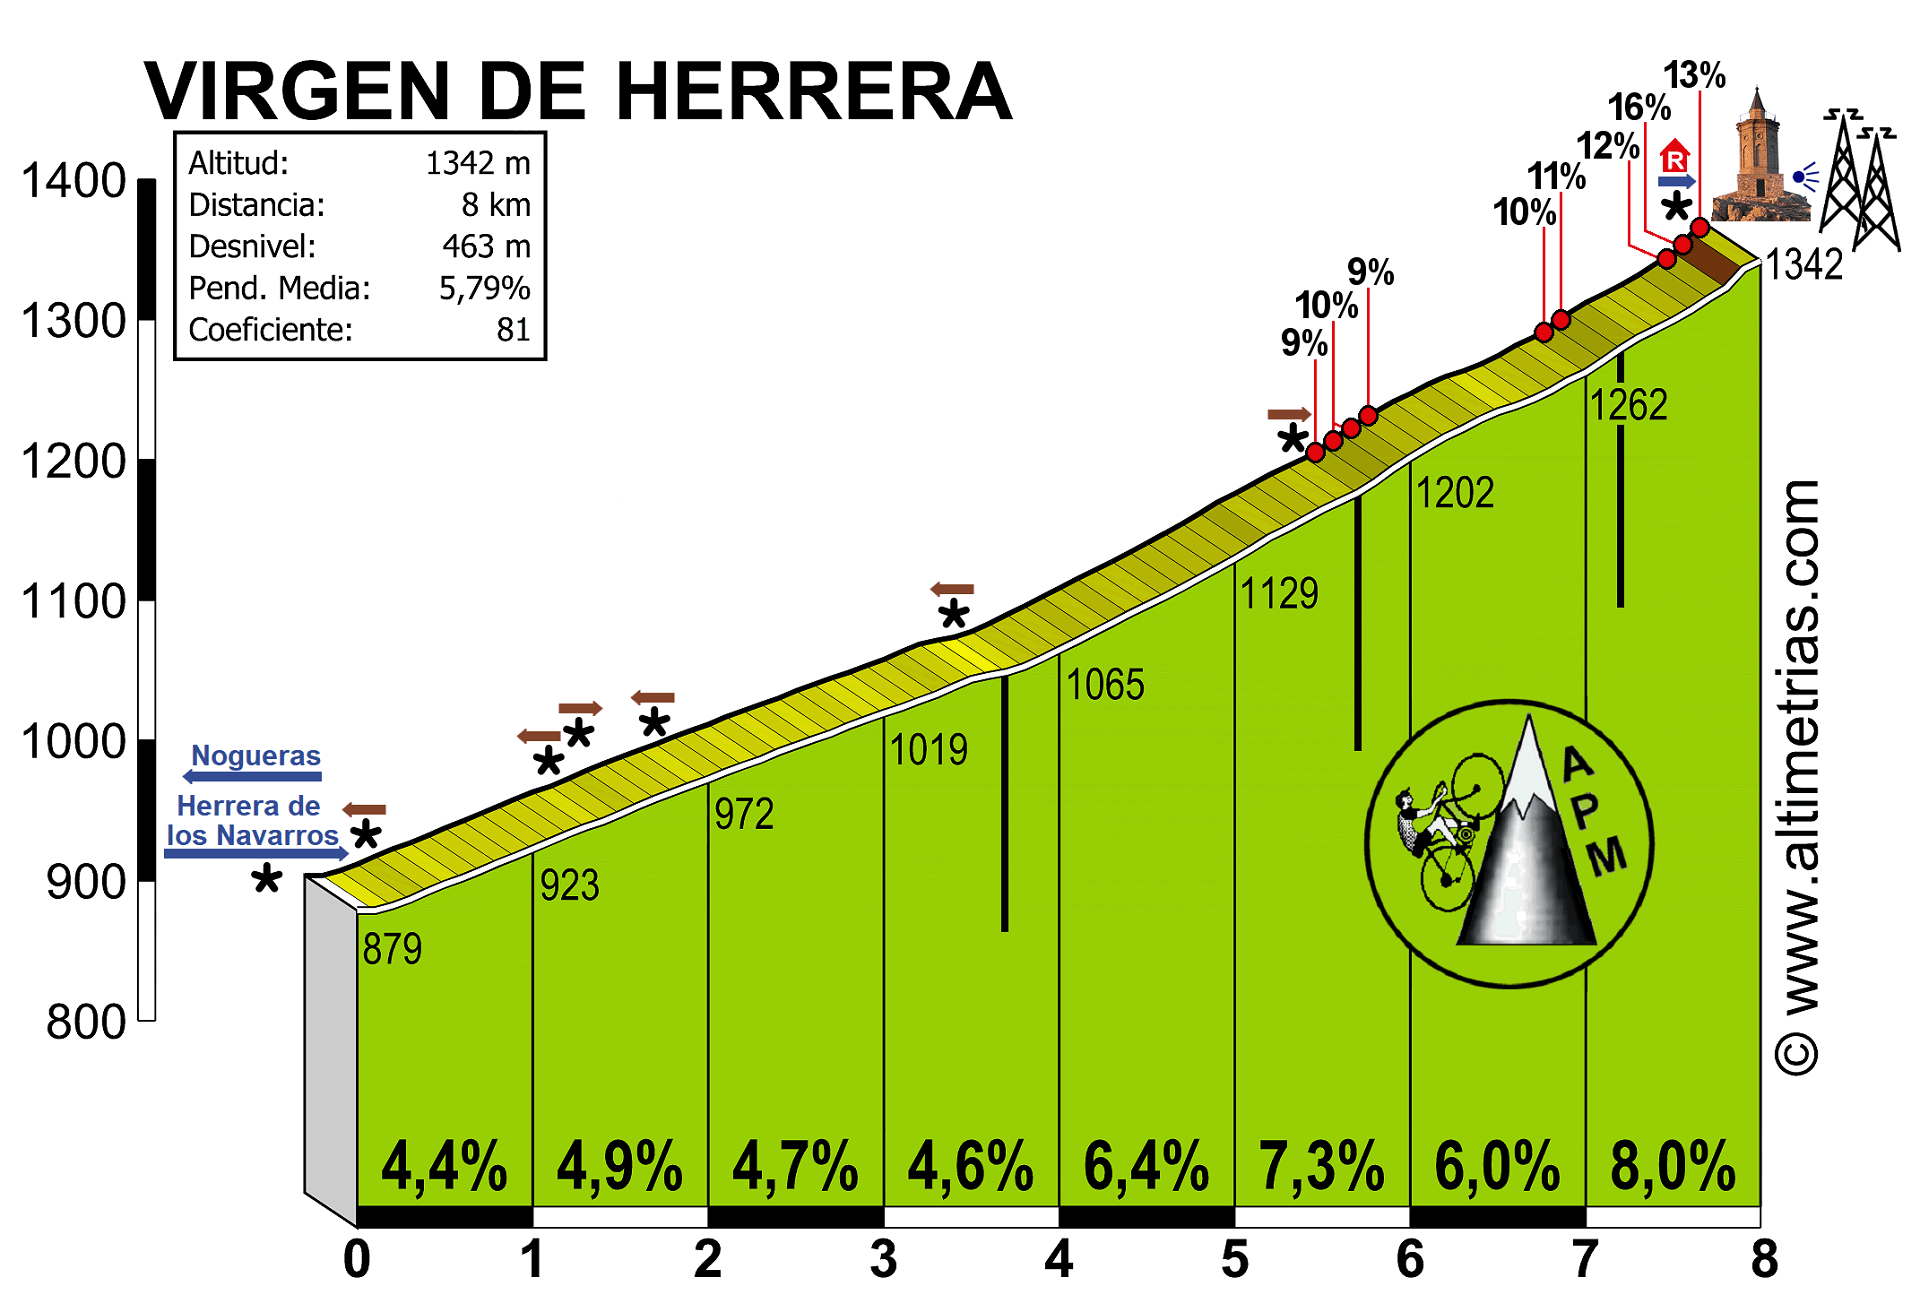 Virgen de Herrera